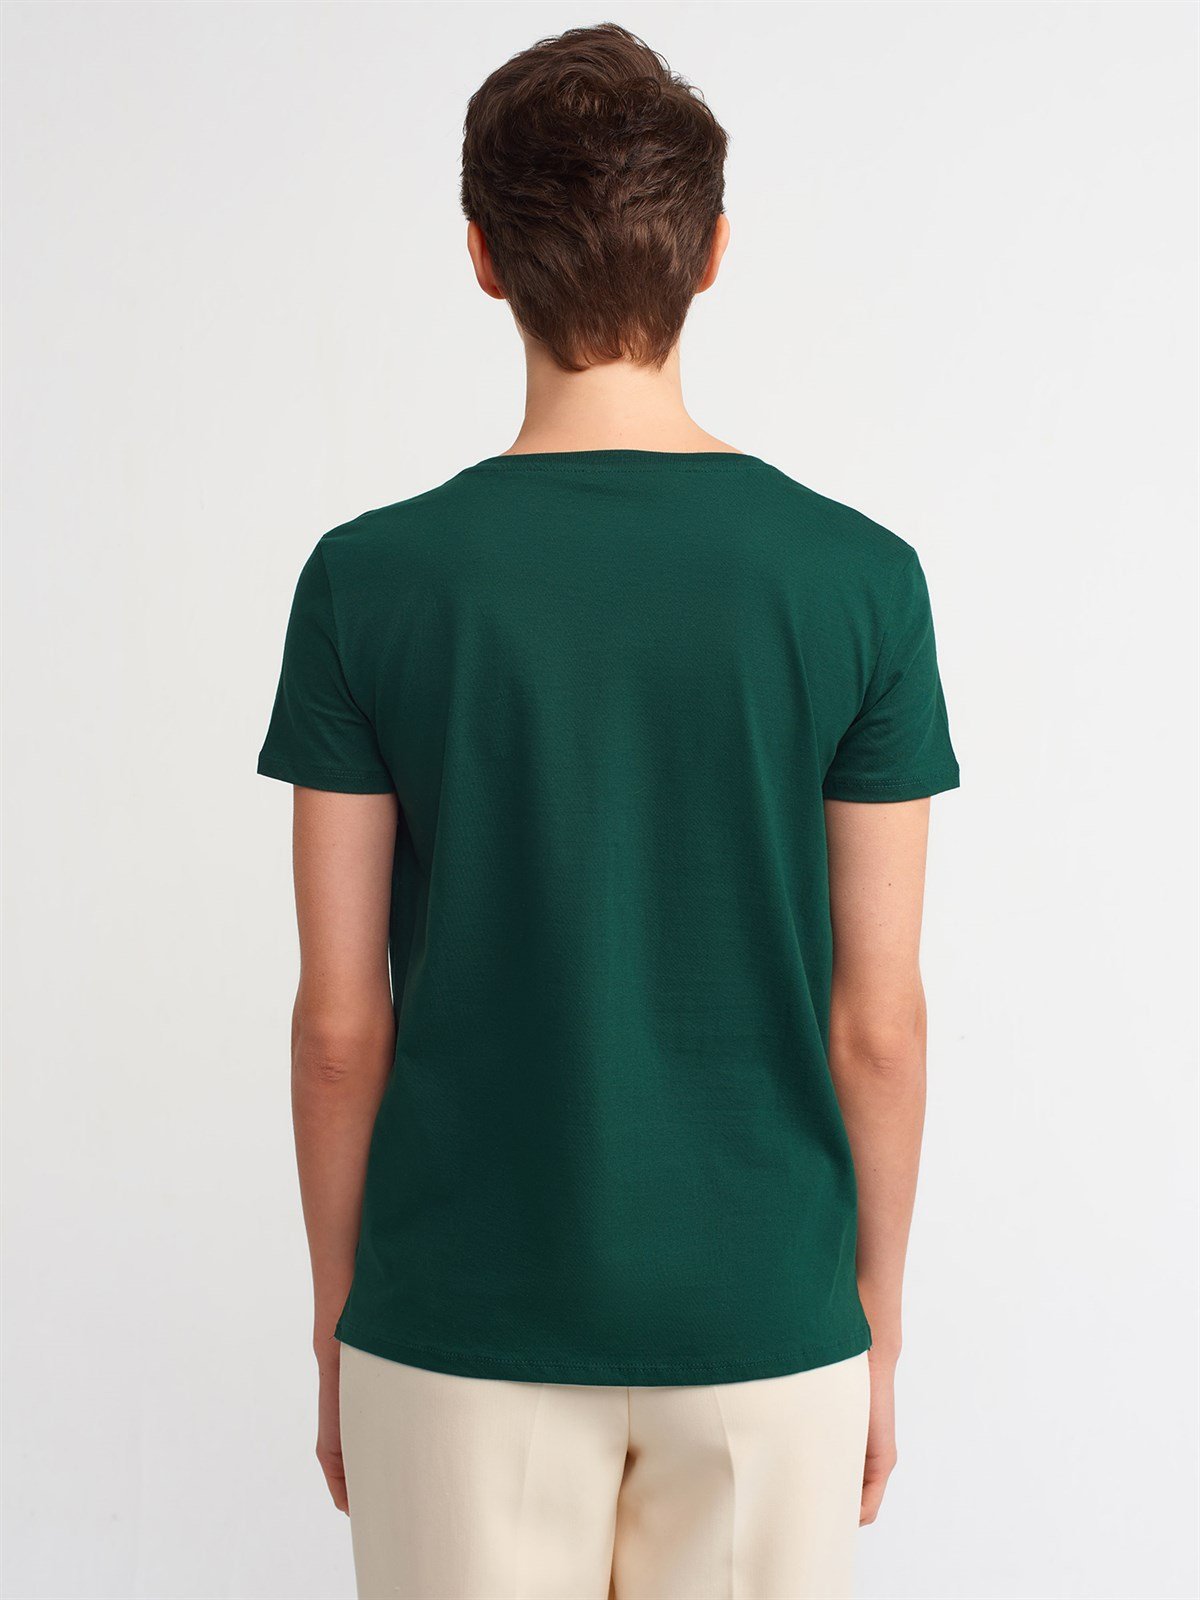 Kadın Yeşil V Yaka Basic Tişört 3470